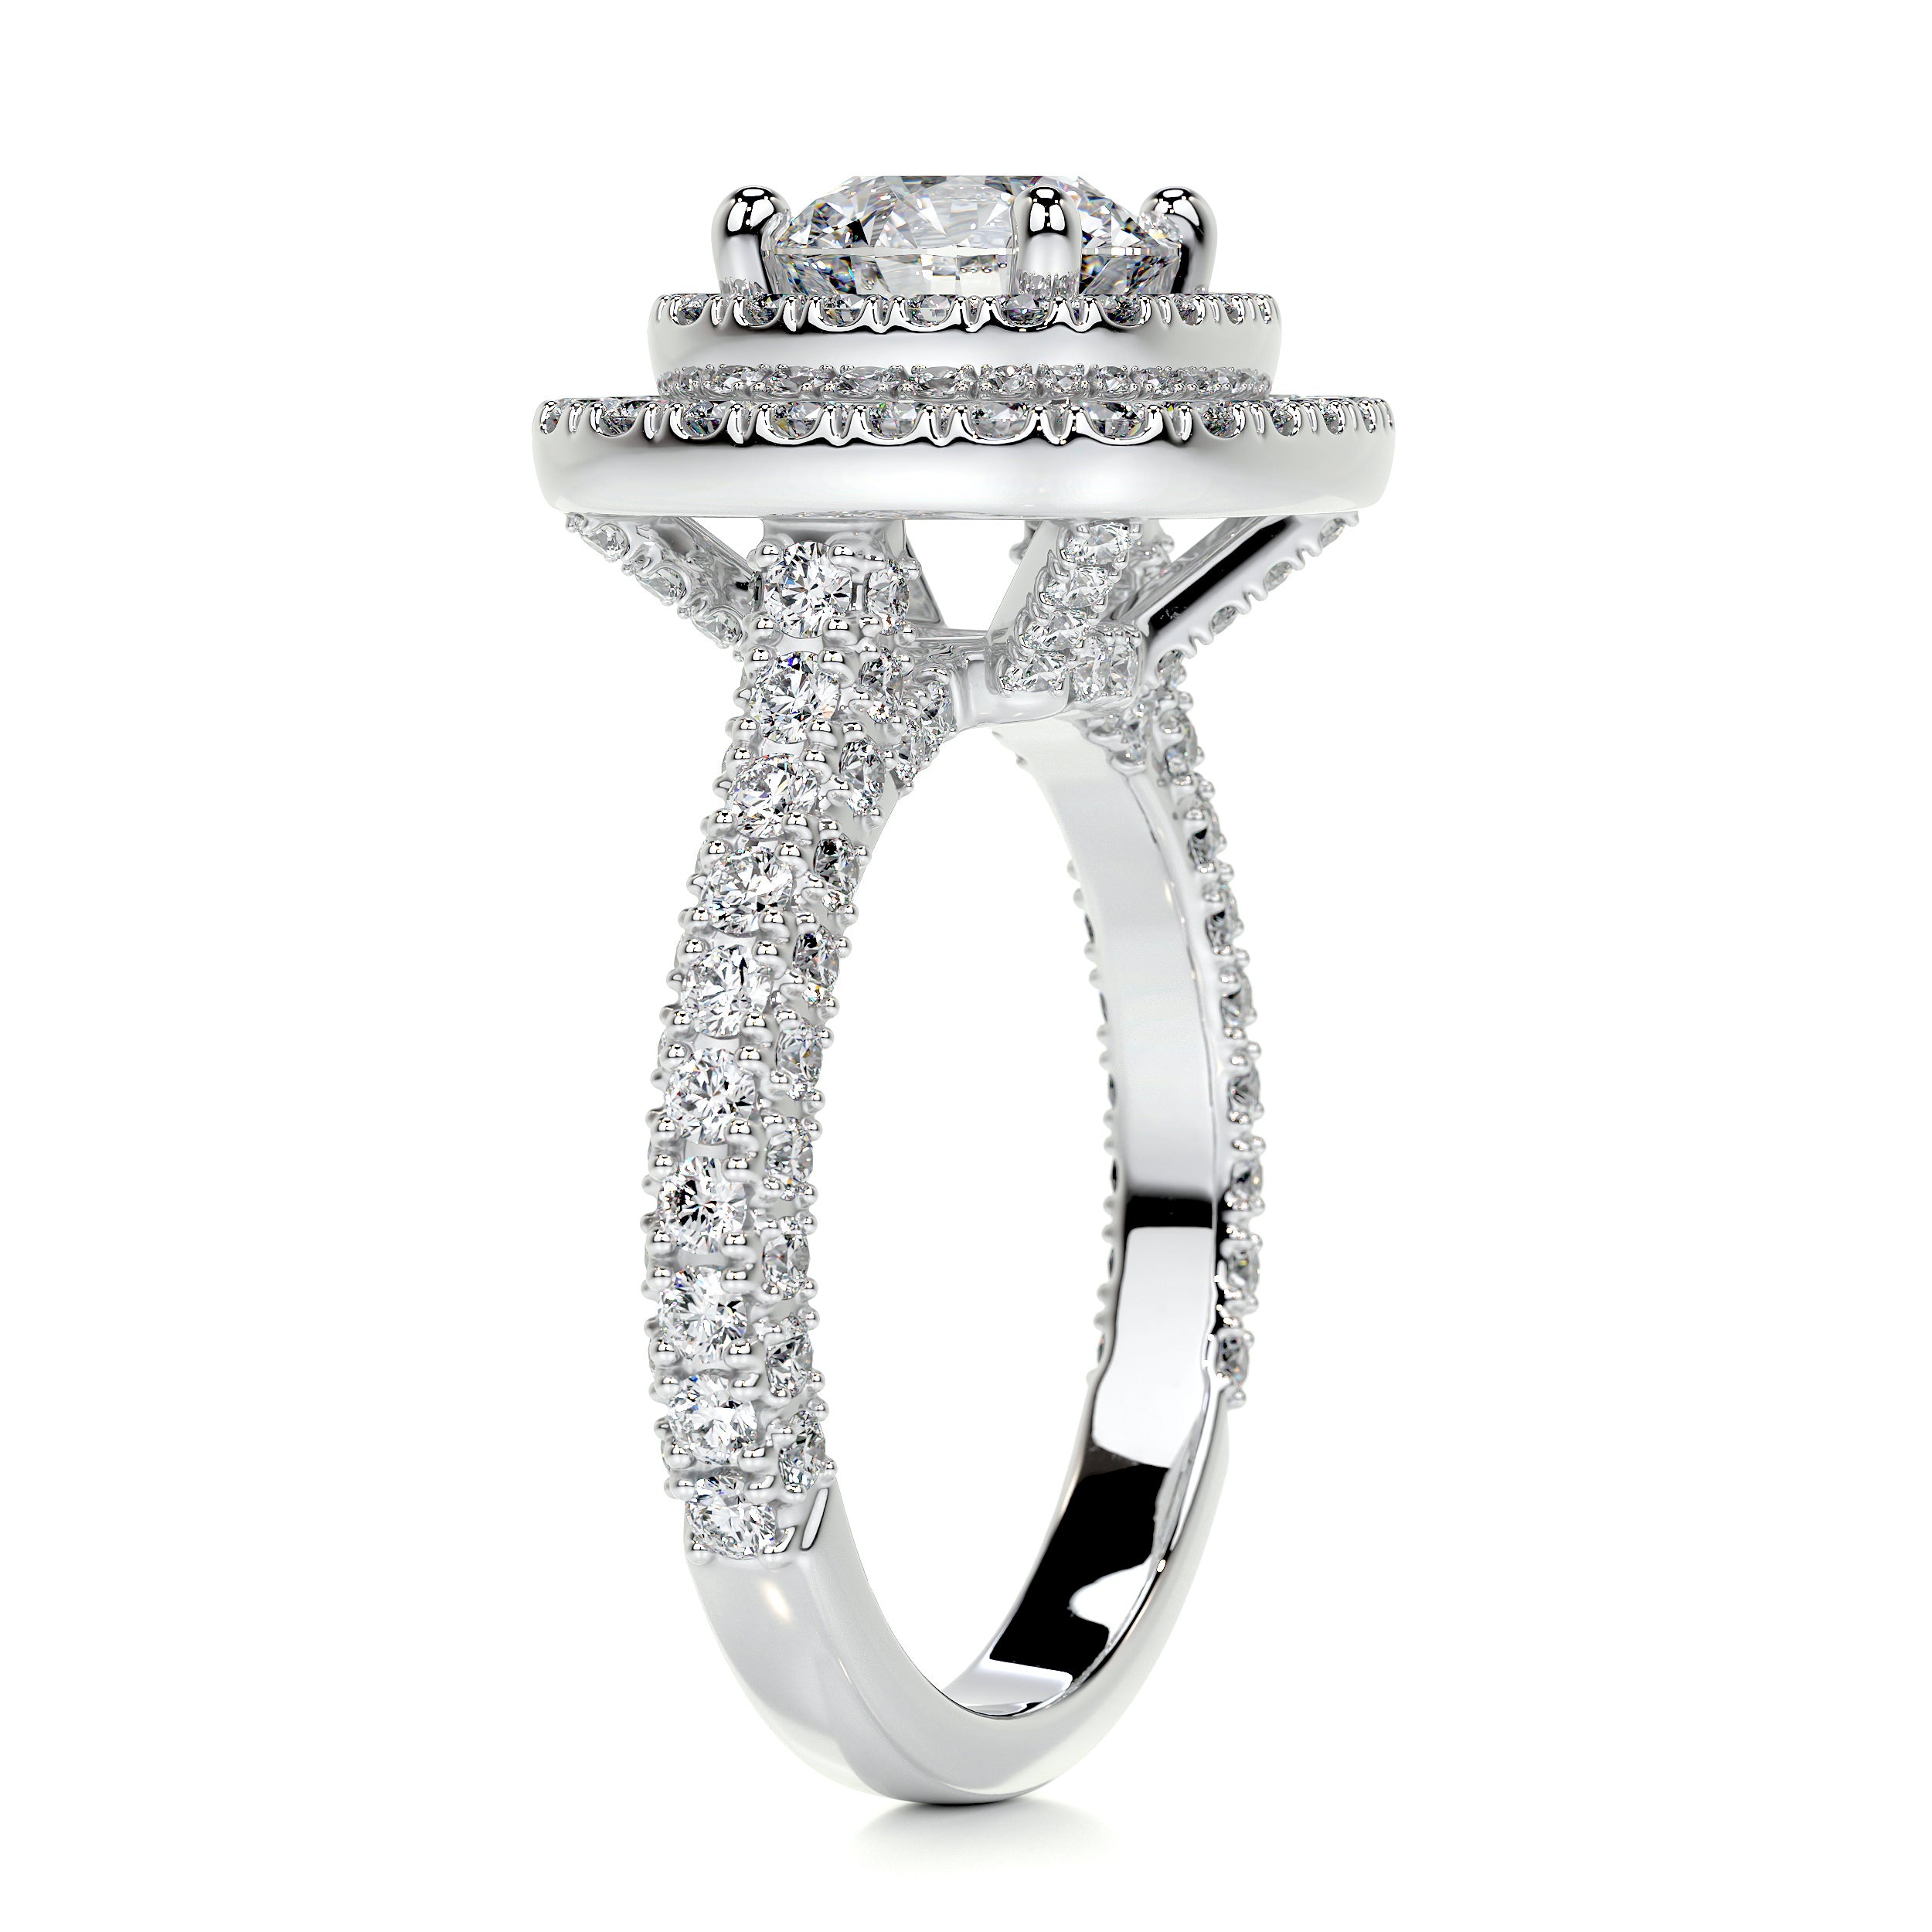 Carmen Diamond Engagement Ring -14K White Gold